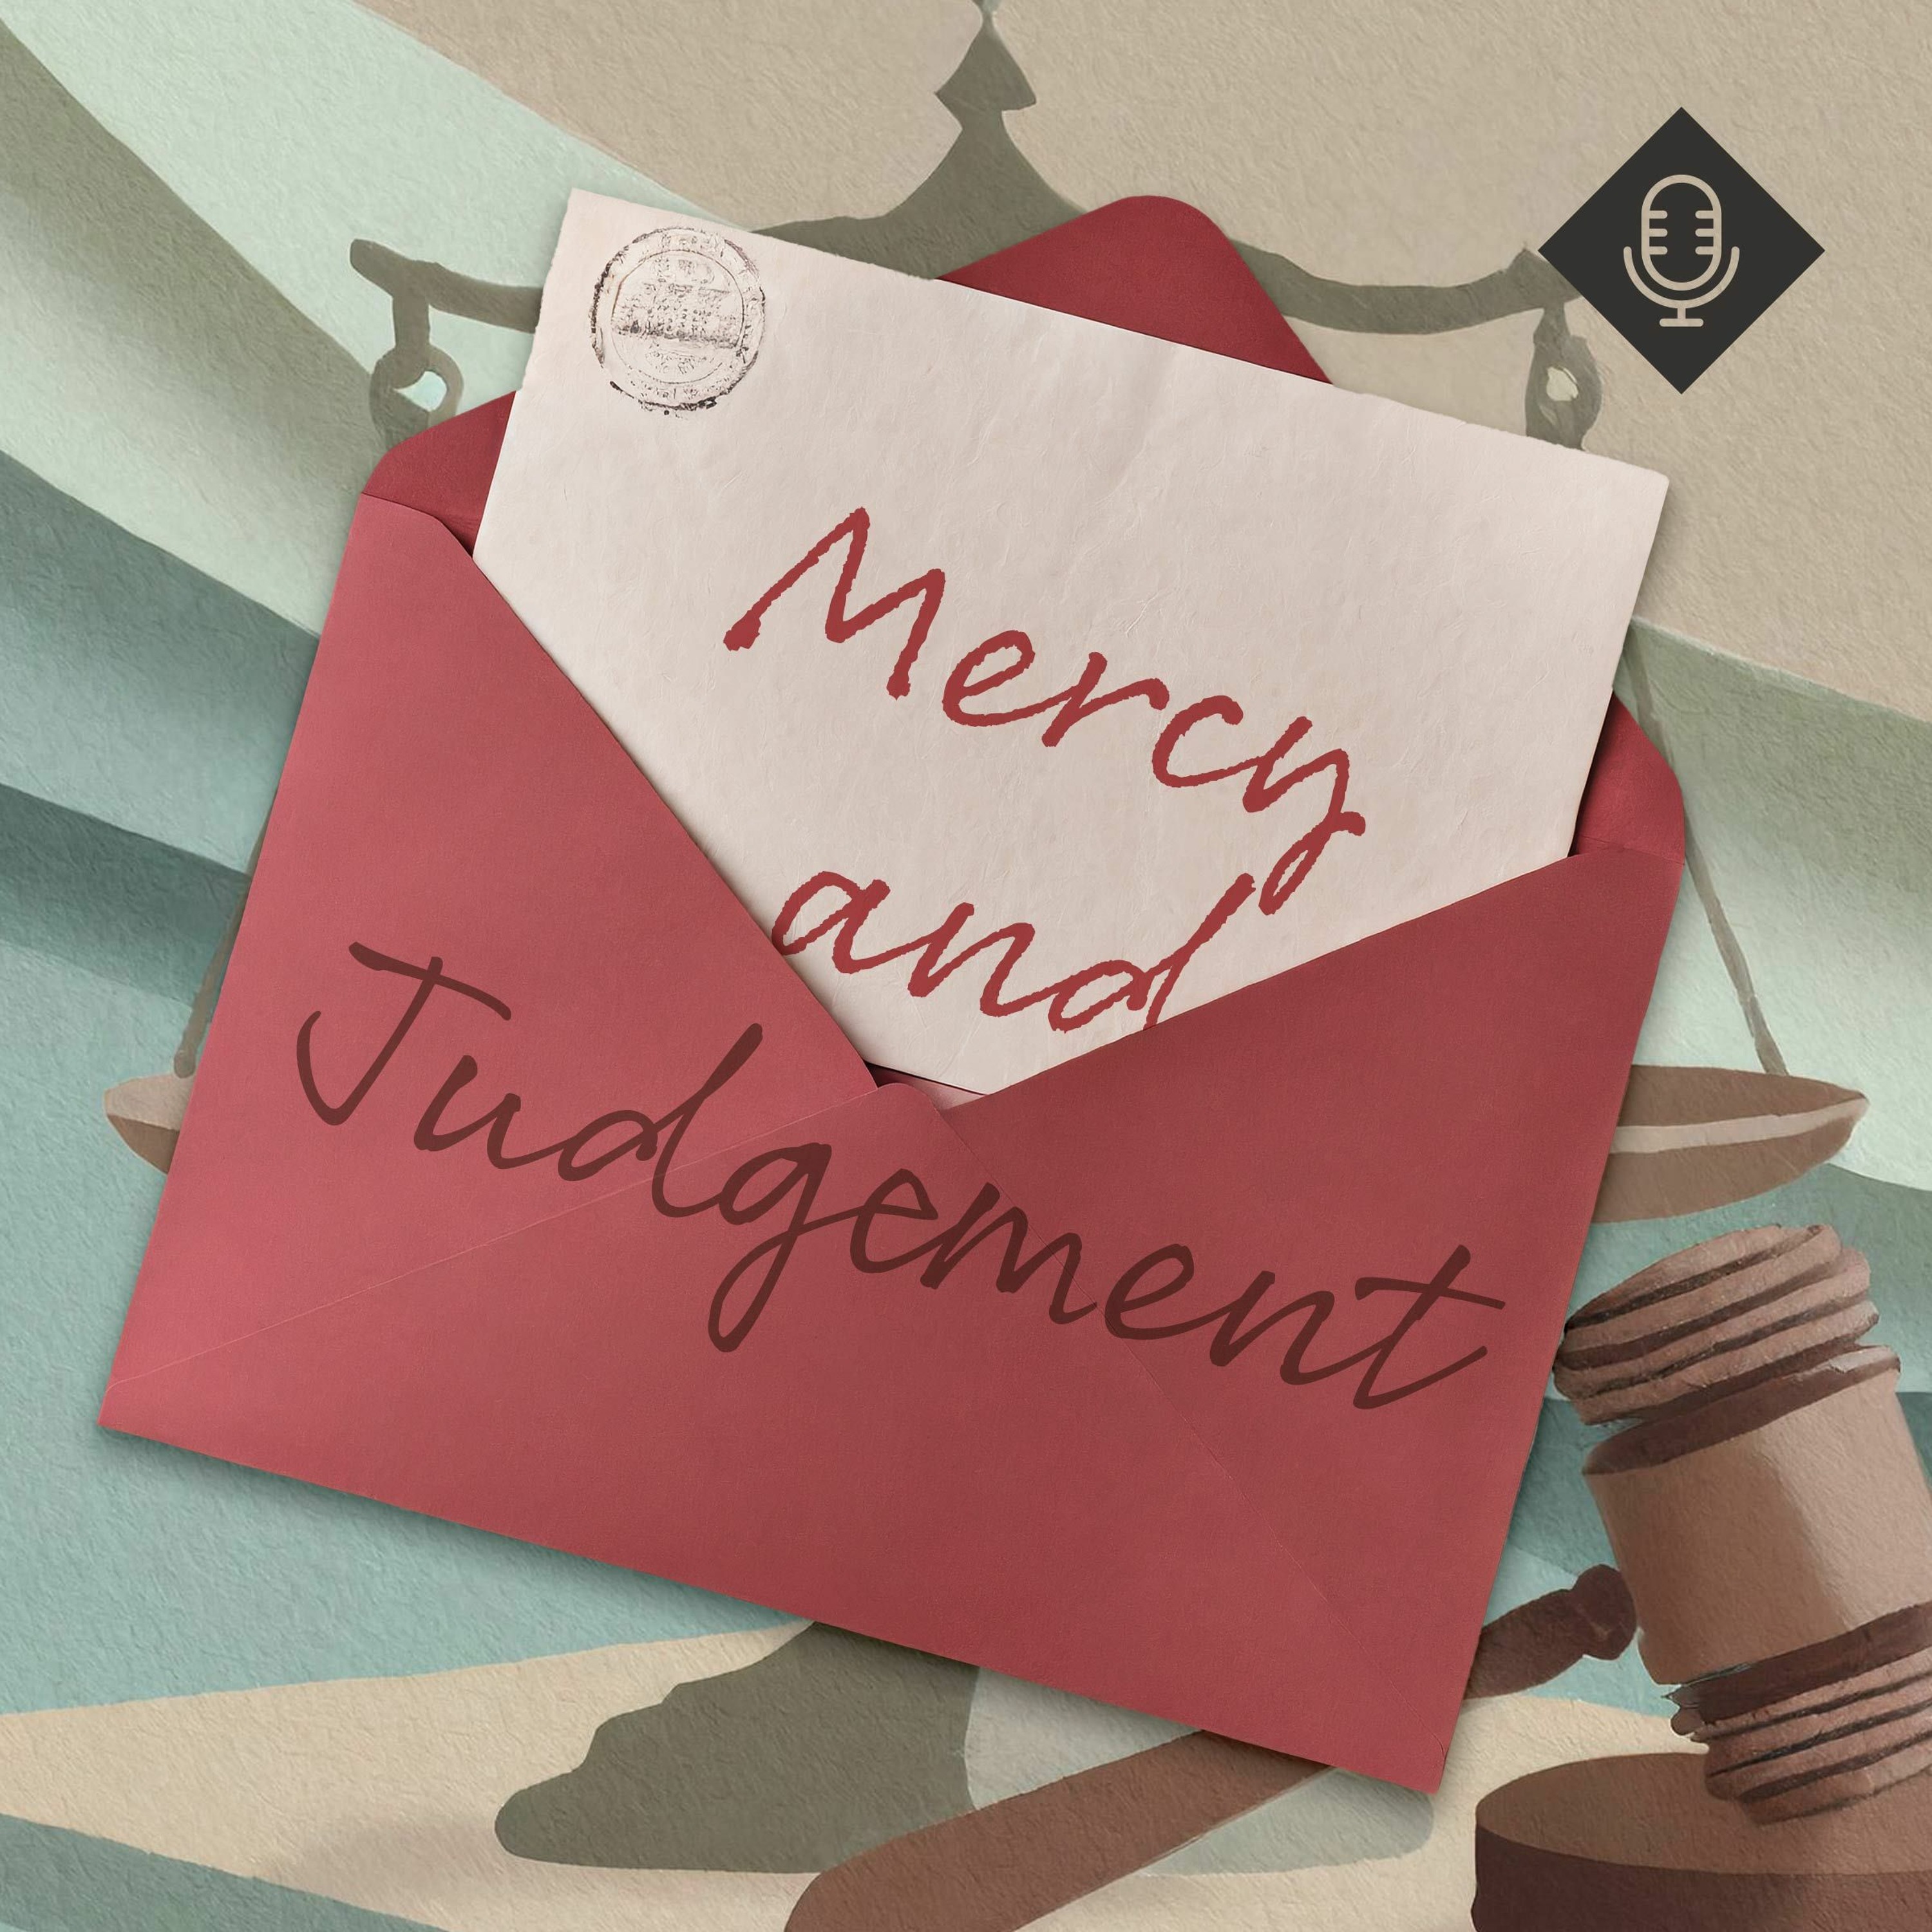 ’Mercy and Judgement’ / Neil Dawson